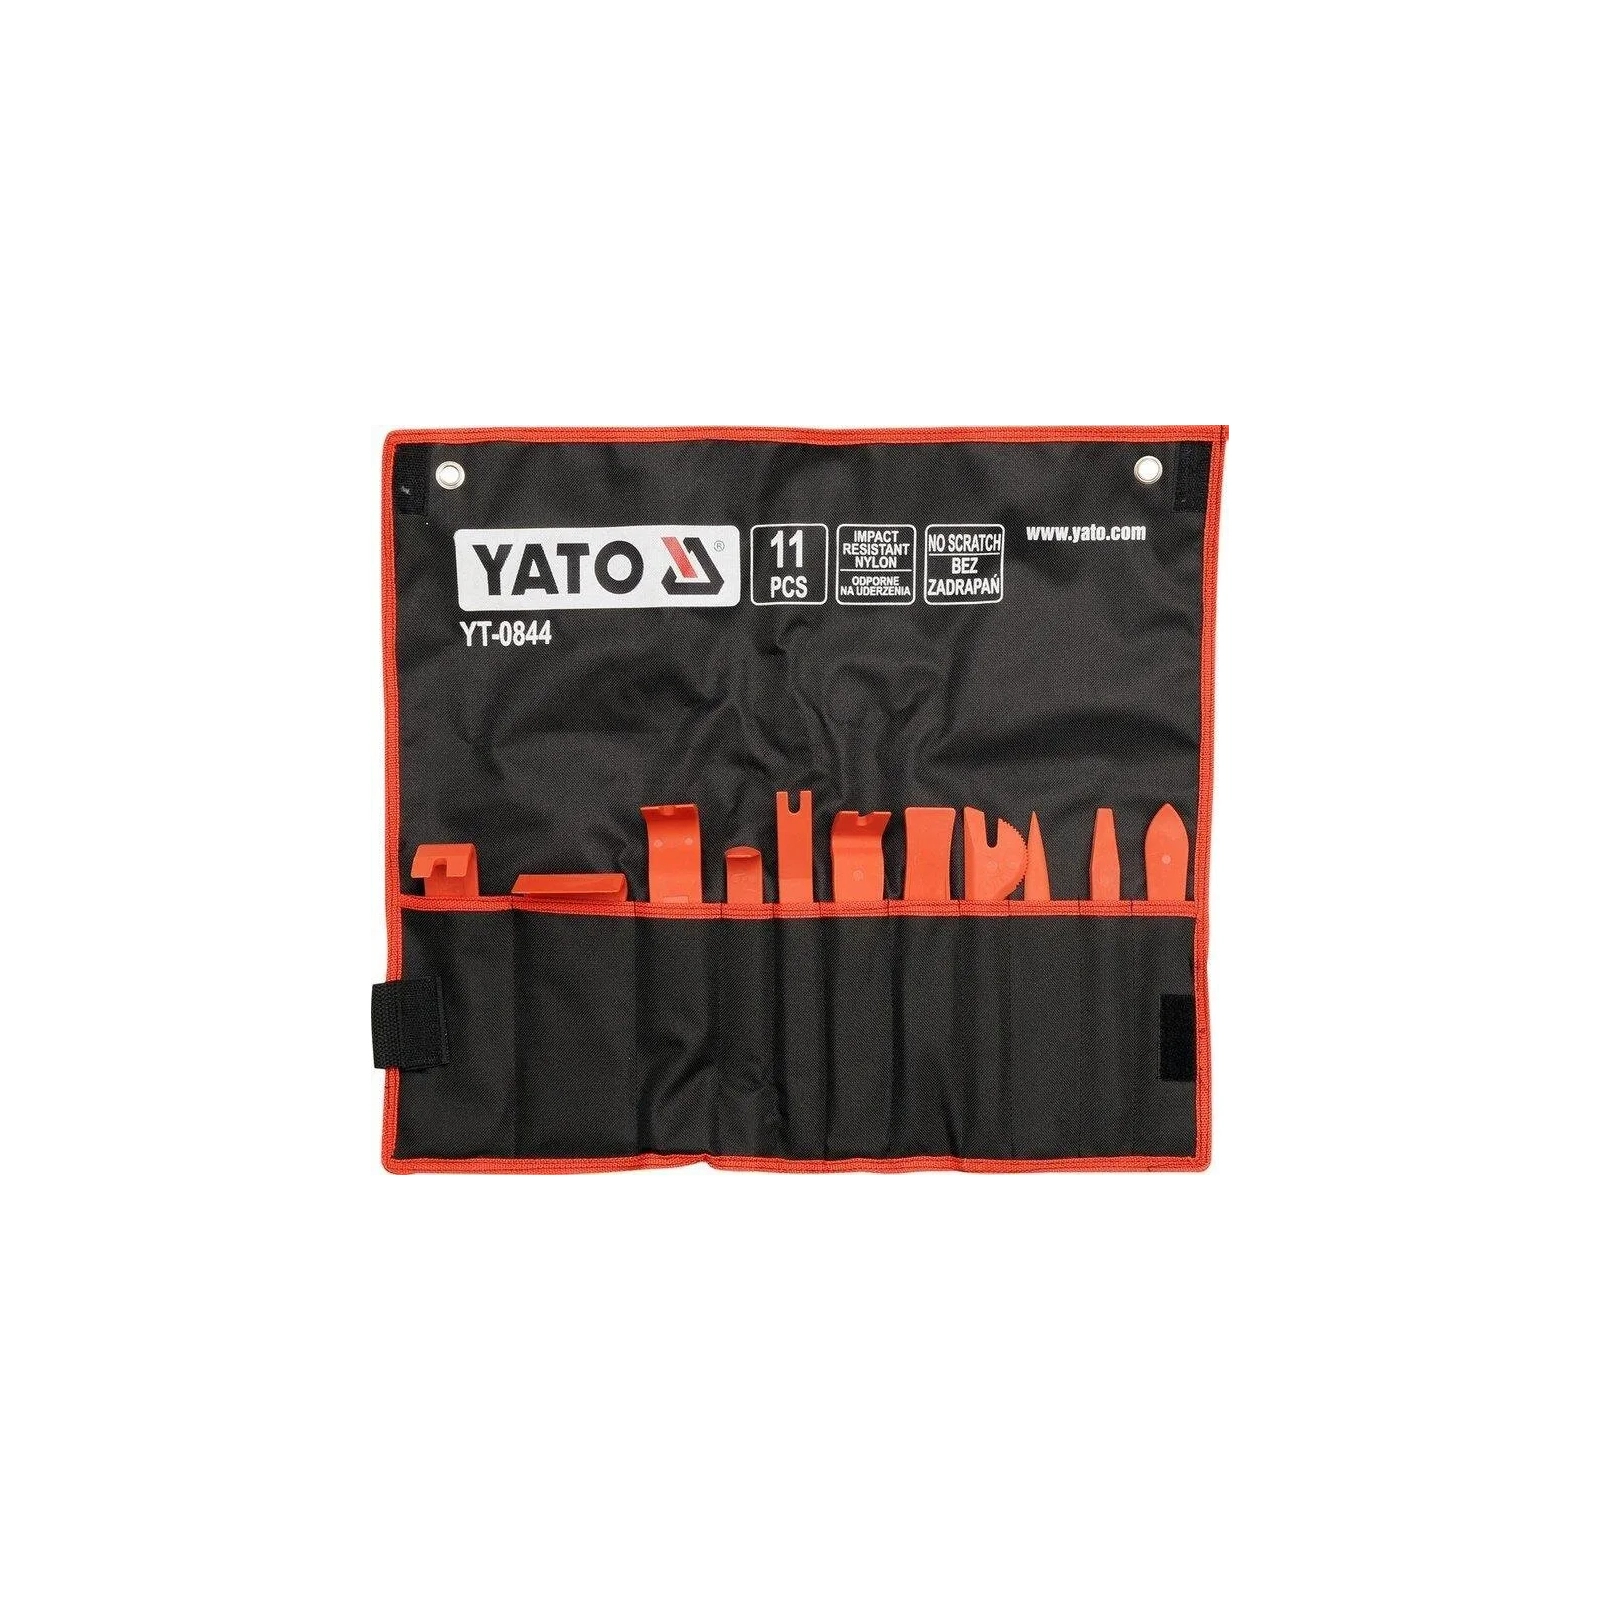 Набор инструментов Yato съемников пластиковых 11 шт. (YT-0844)